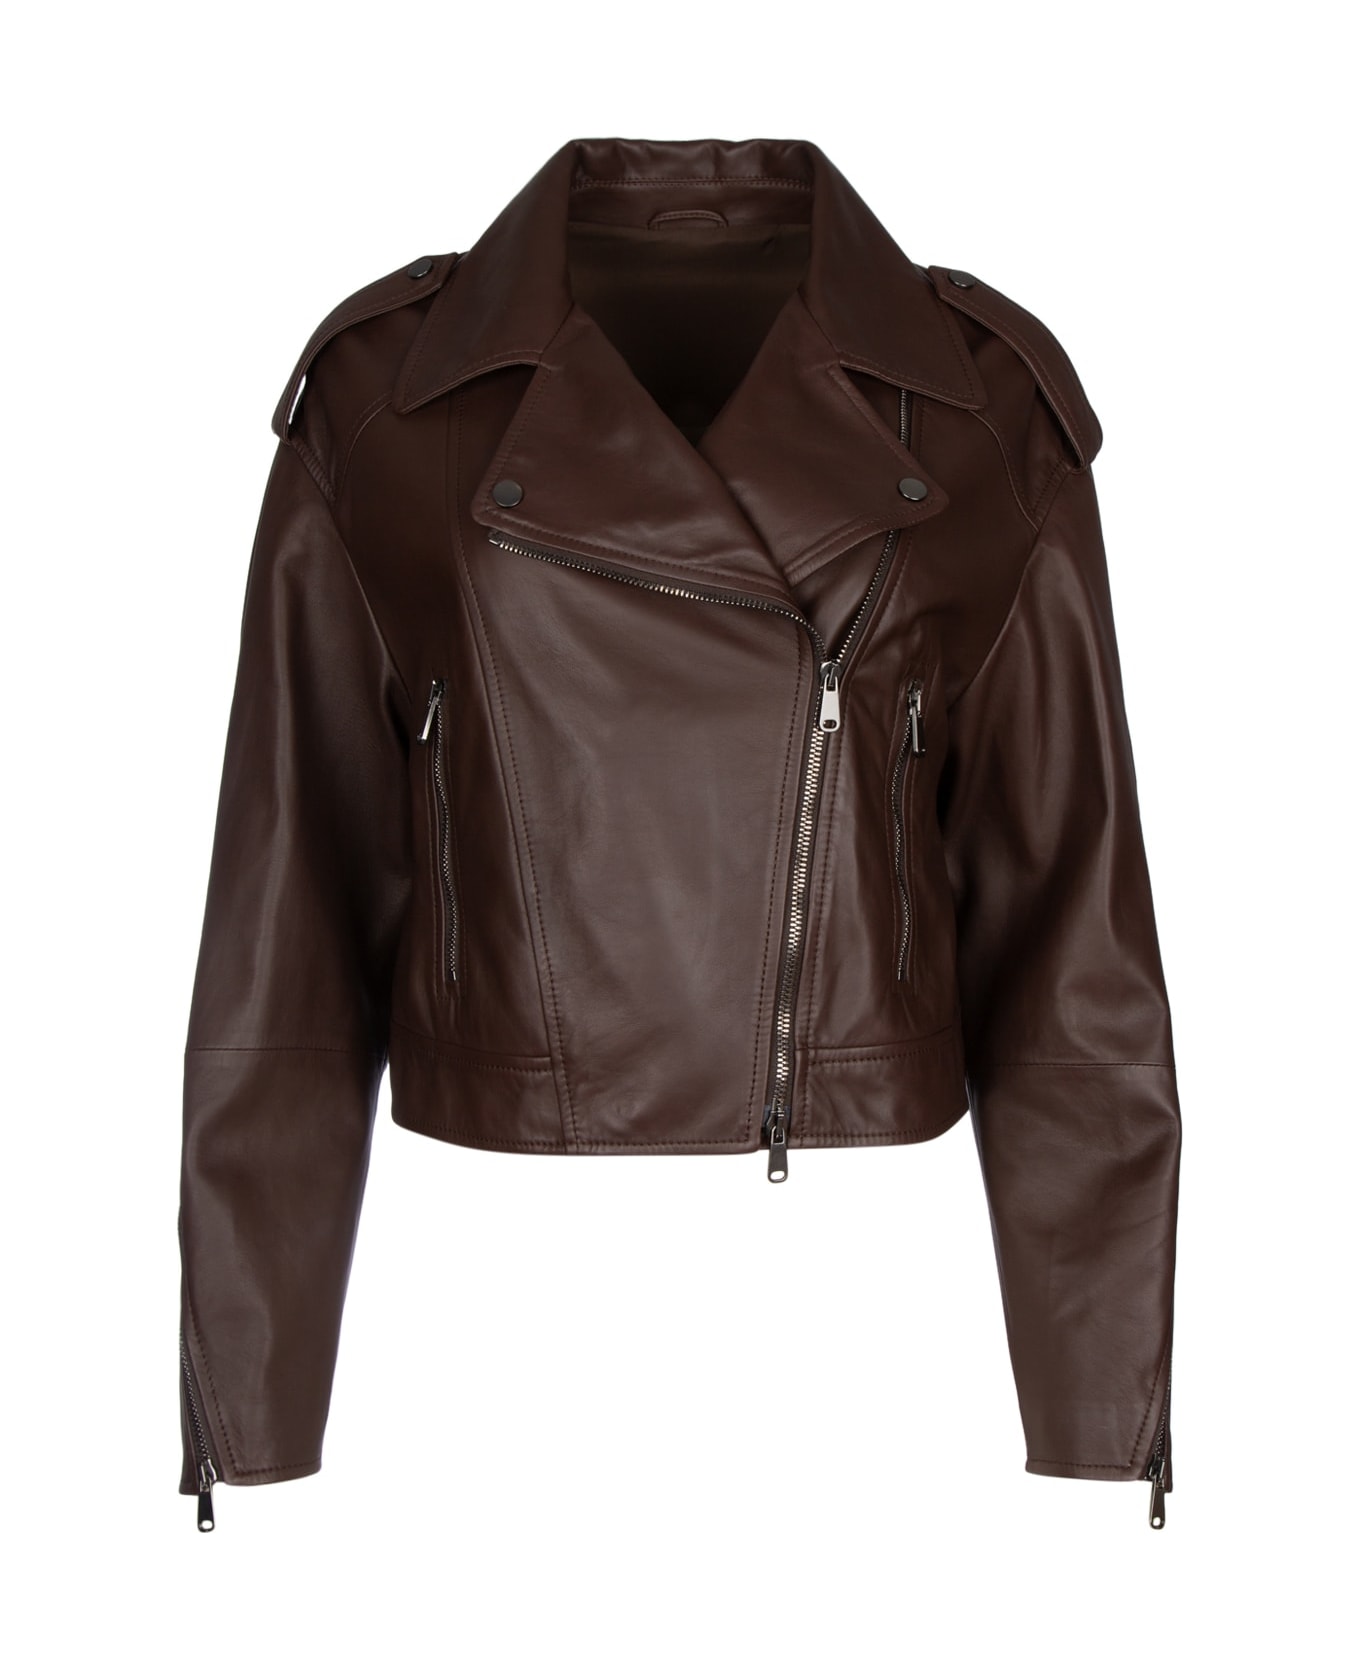 Brunello Cucinelli Leather Jacket - TESTADIMORO